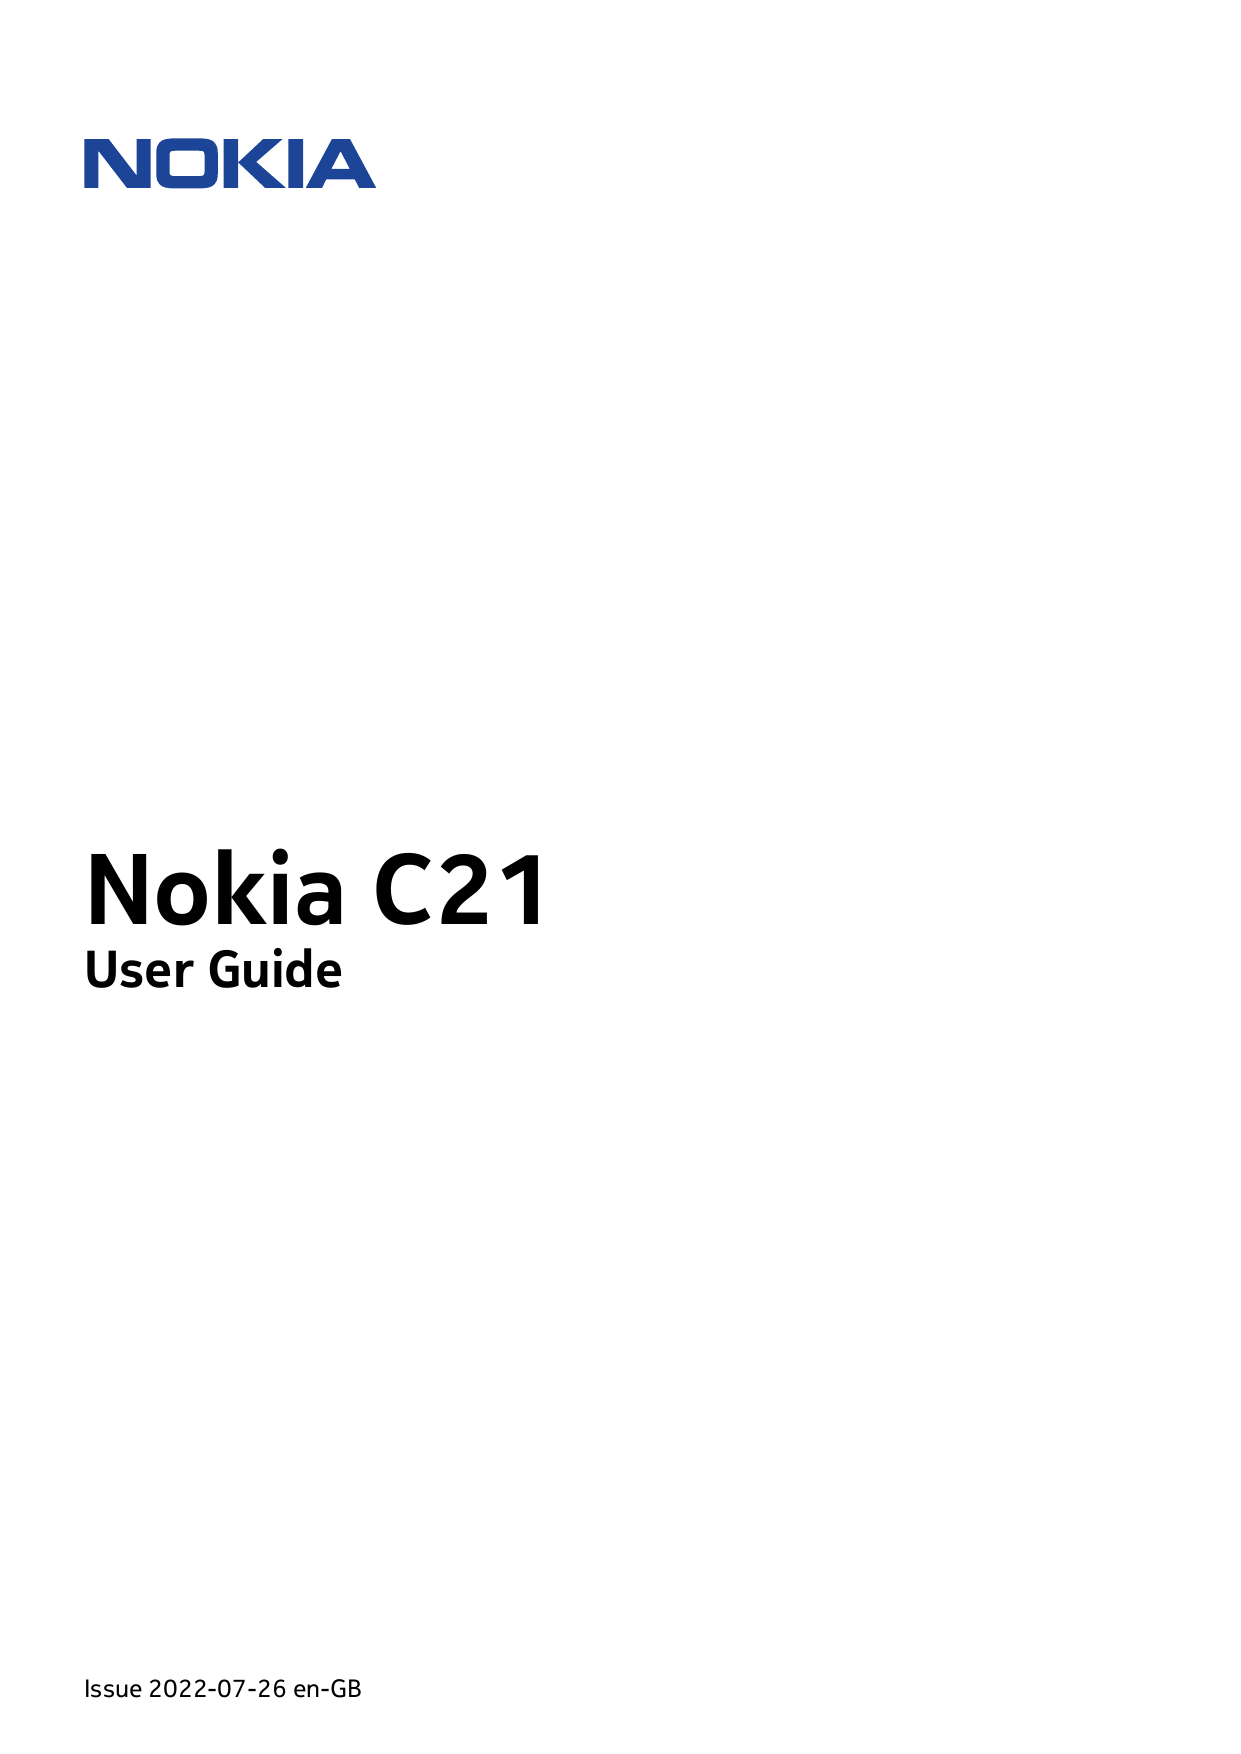 Nokia C21User GuideIssue 2022-07-26 en-GB